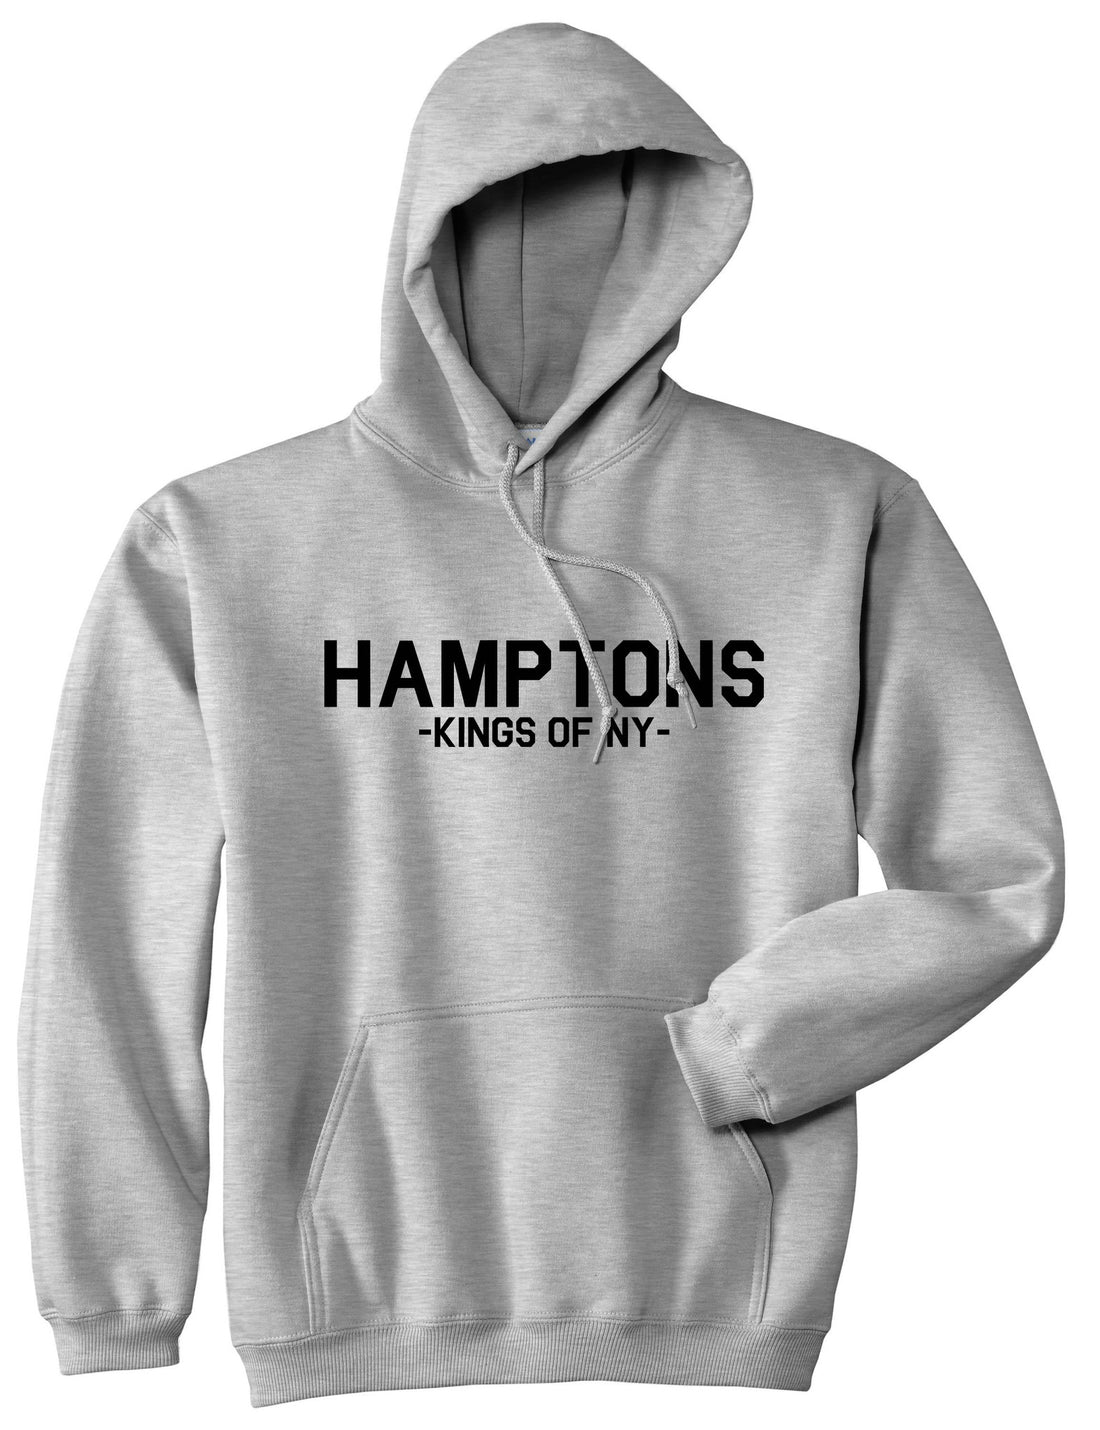 Hamptons New York Pullover Hoodie Hoody in Grey